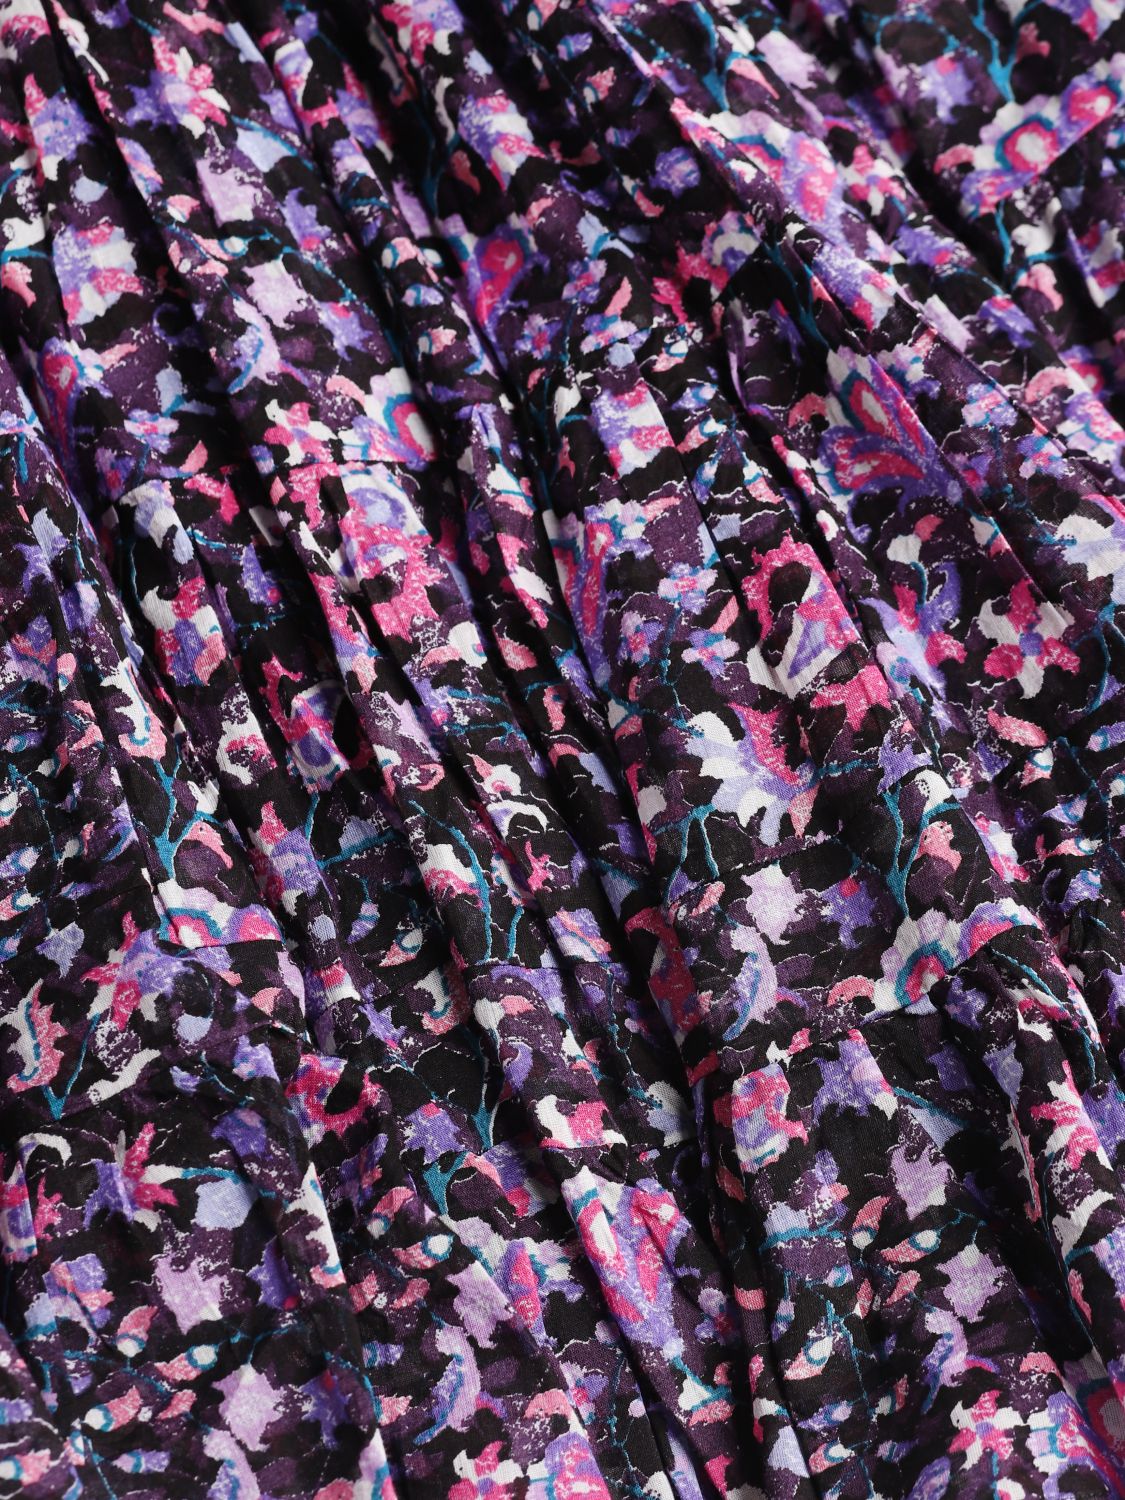 grave Lavet til at huske Agnes Gray ISABEL MARANT ETOILE: skirt in printed cotton - Violet | Isabel Marant  Etoile skirt JU0053FAA3J08E online at GIGLIO.COM